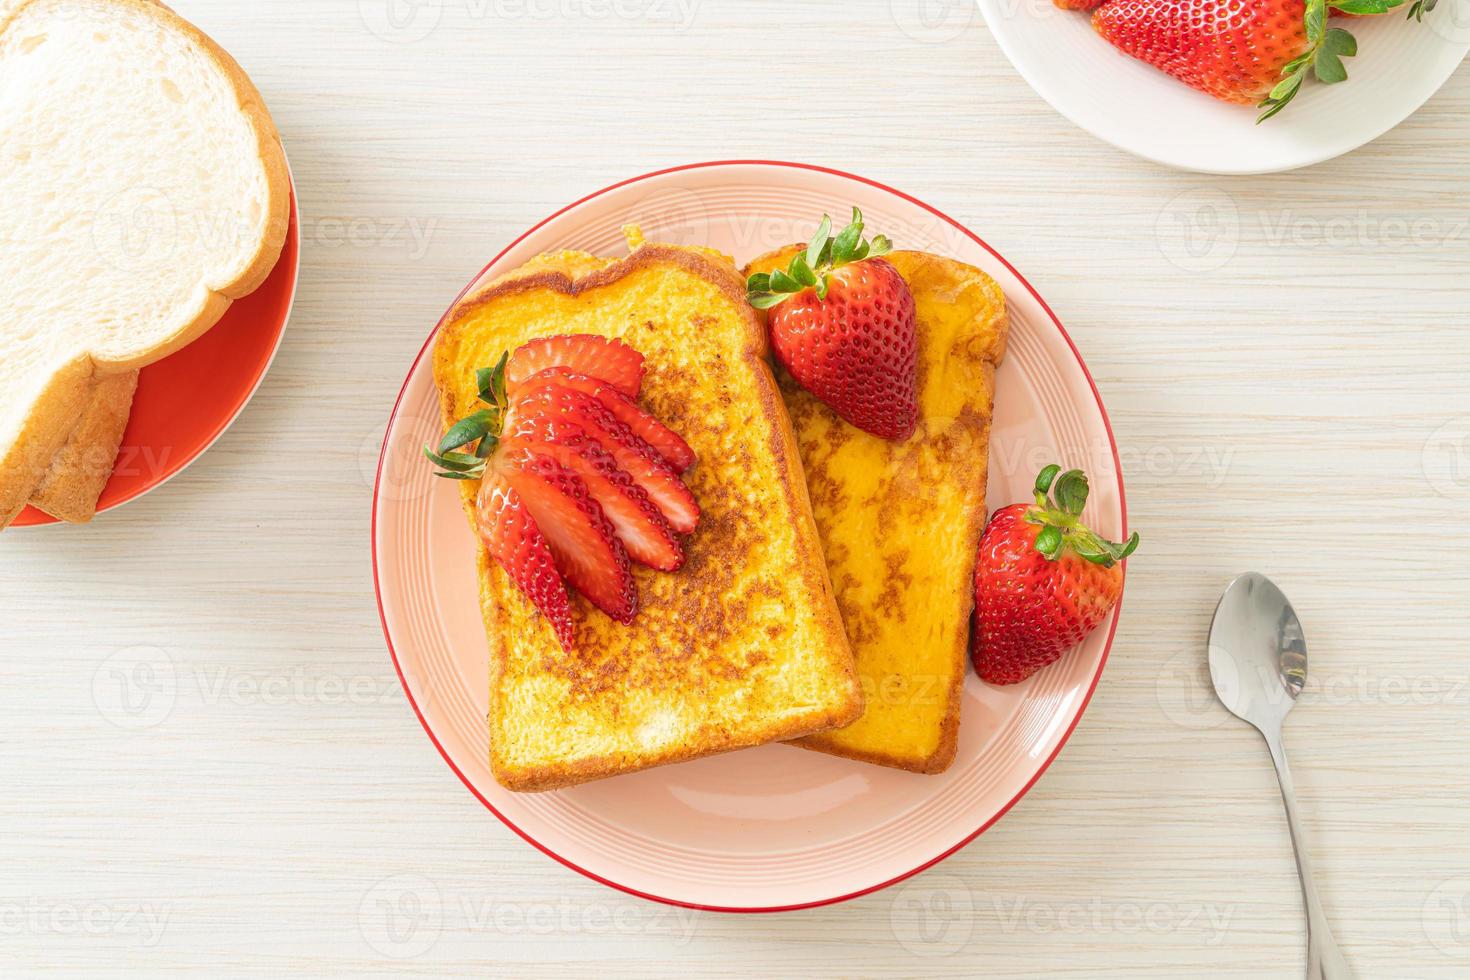 fransk toast med färsk jordgubbe foto